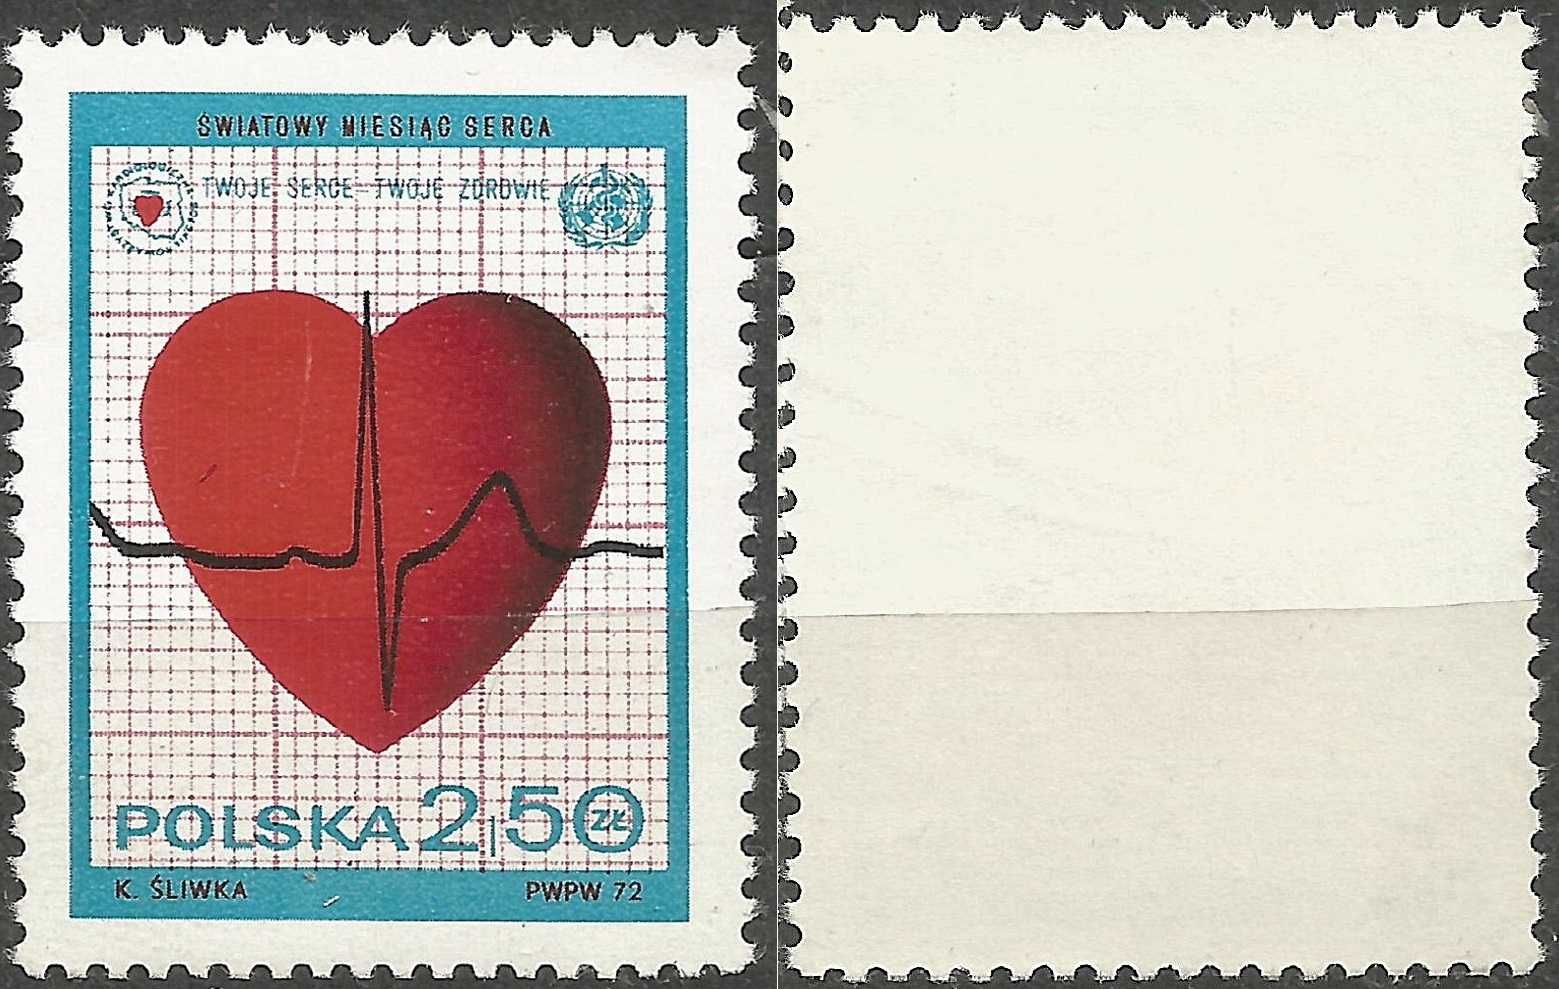 Znaczek: Światowy miesiąc serca FI 2001 stan** 1972 r.